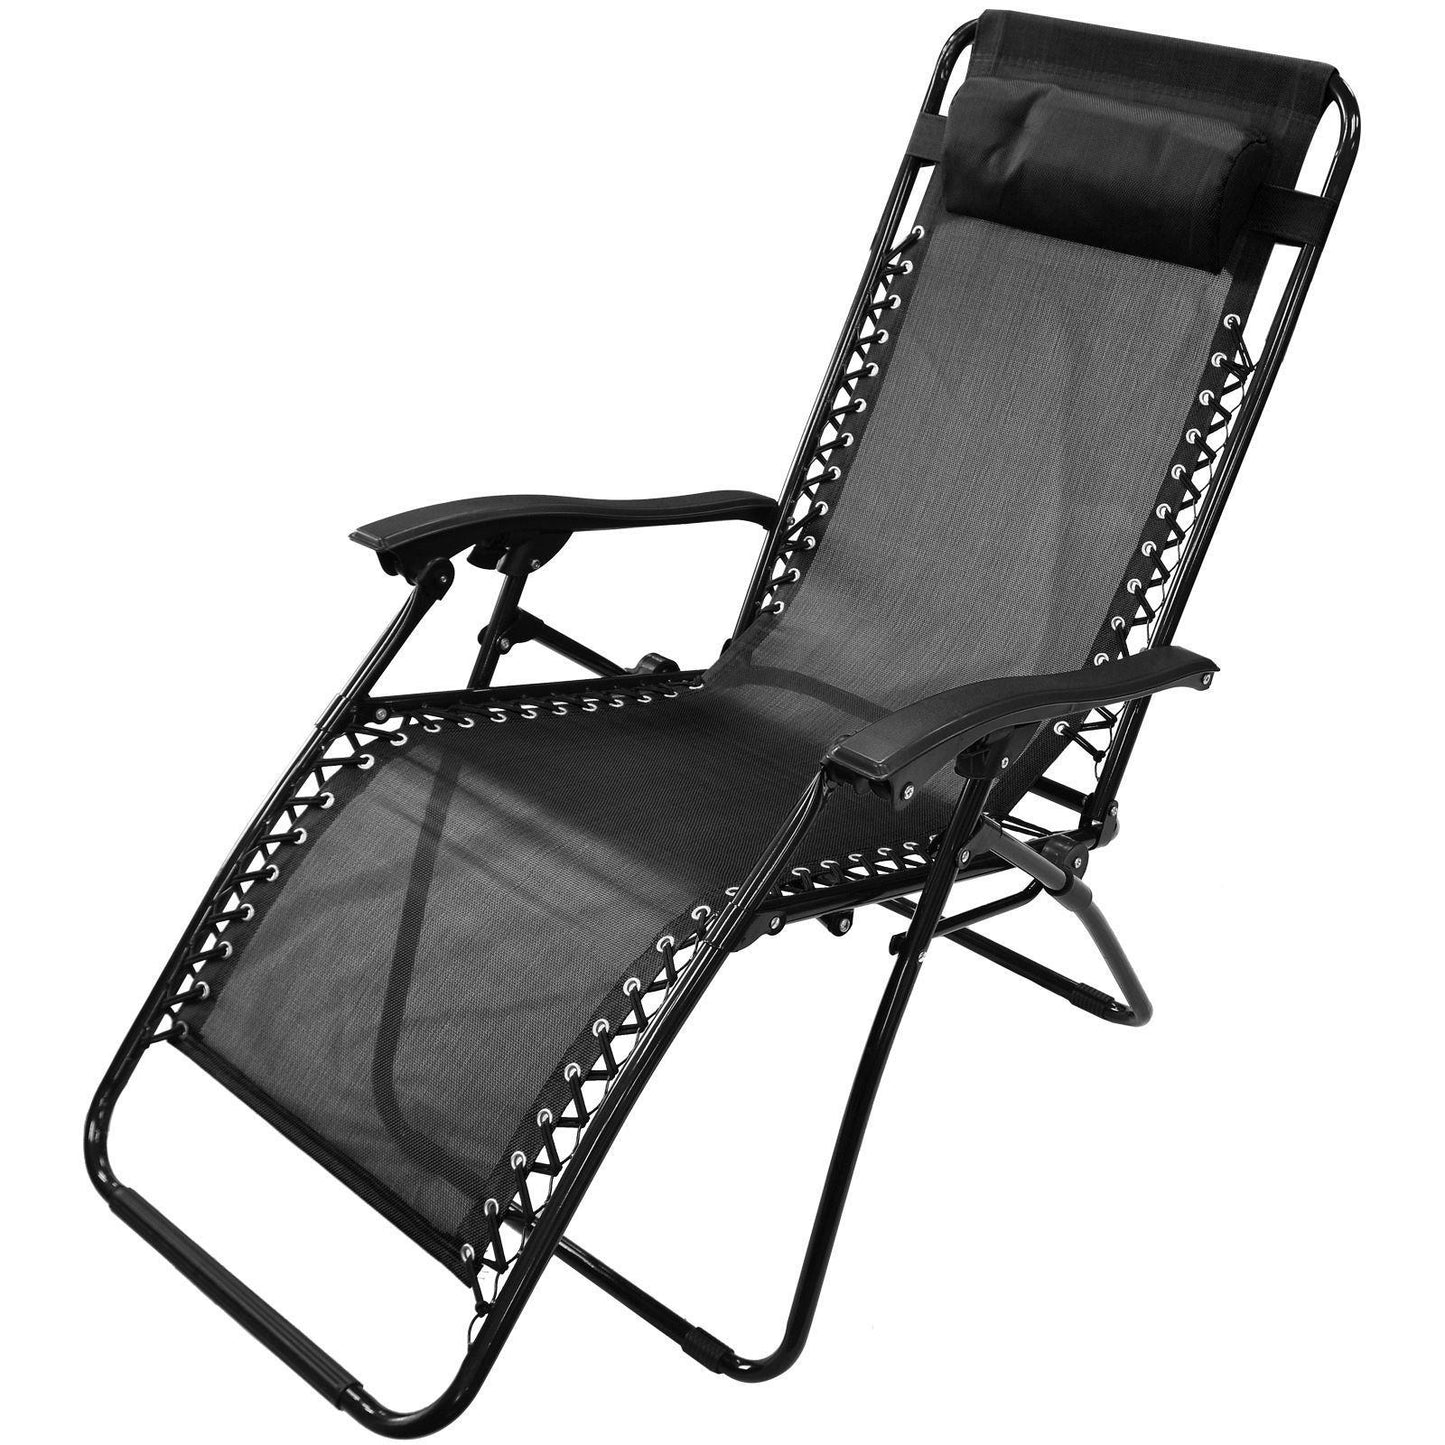 Set Of 4 Zero Gravity Reclining Chairs - Black